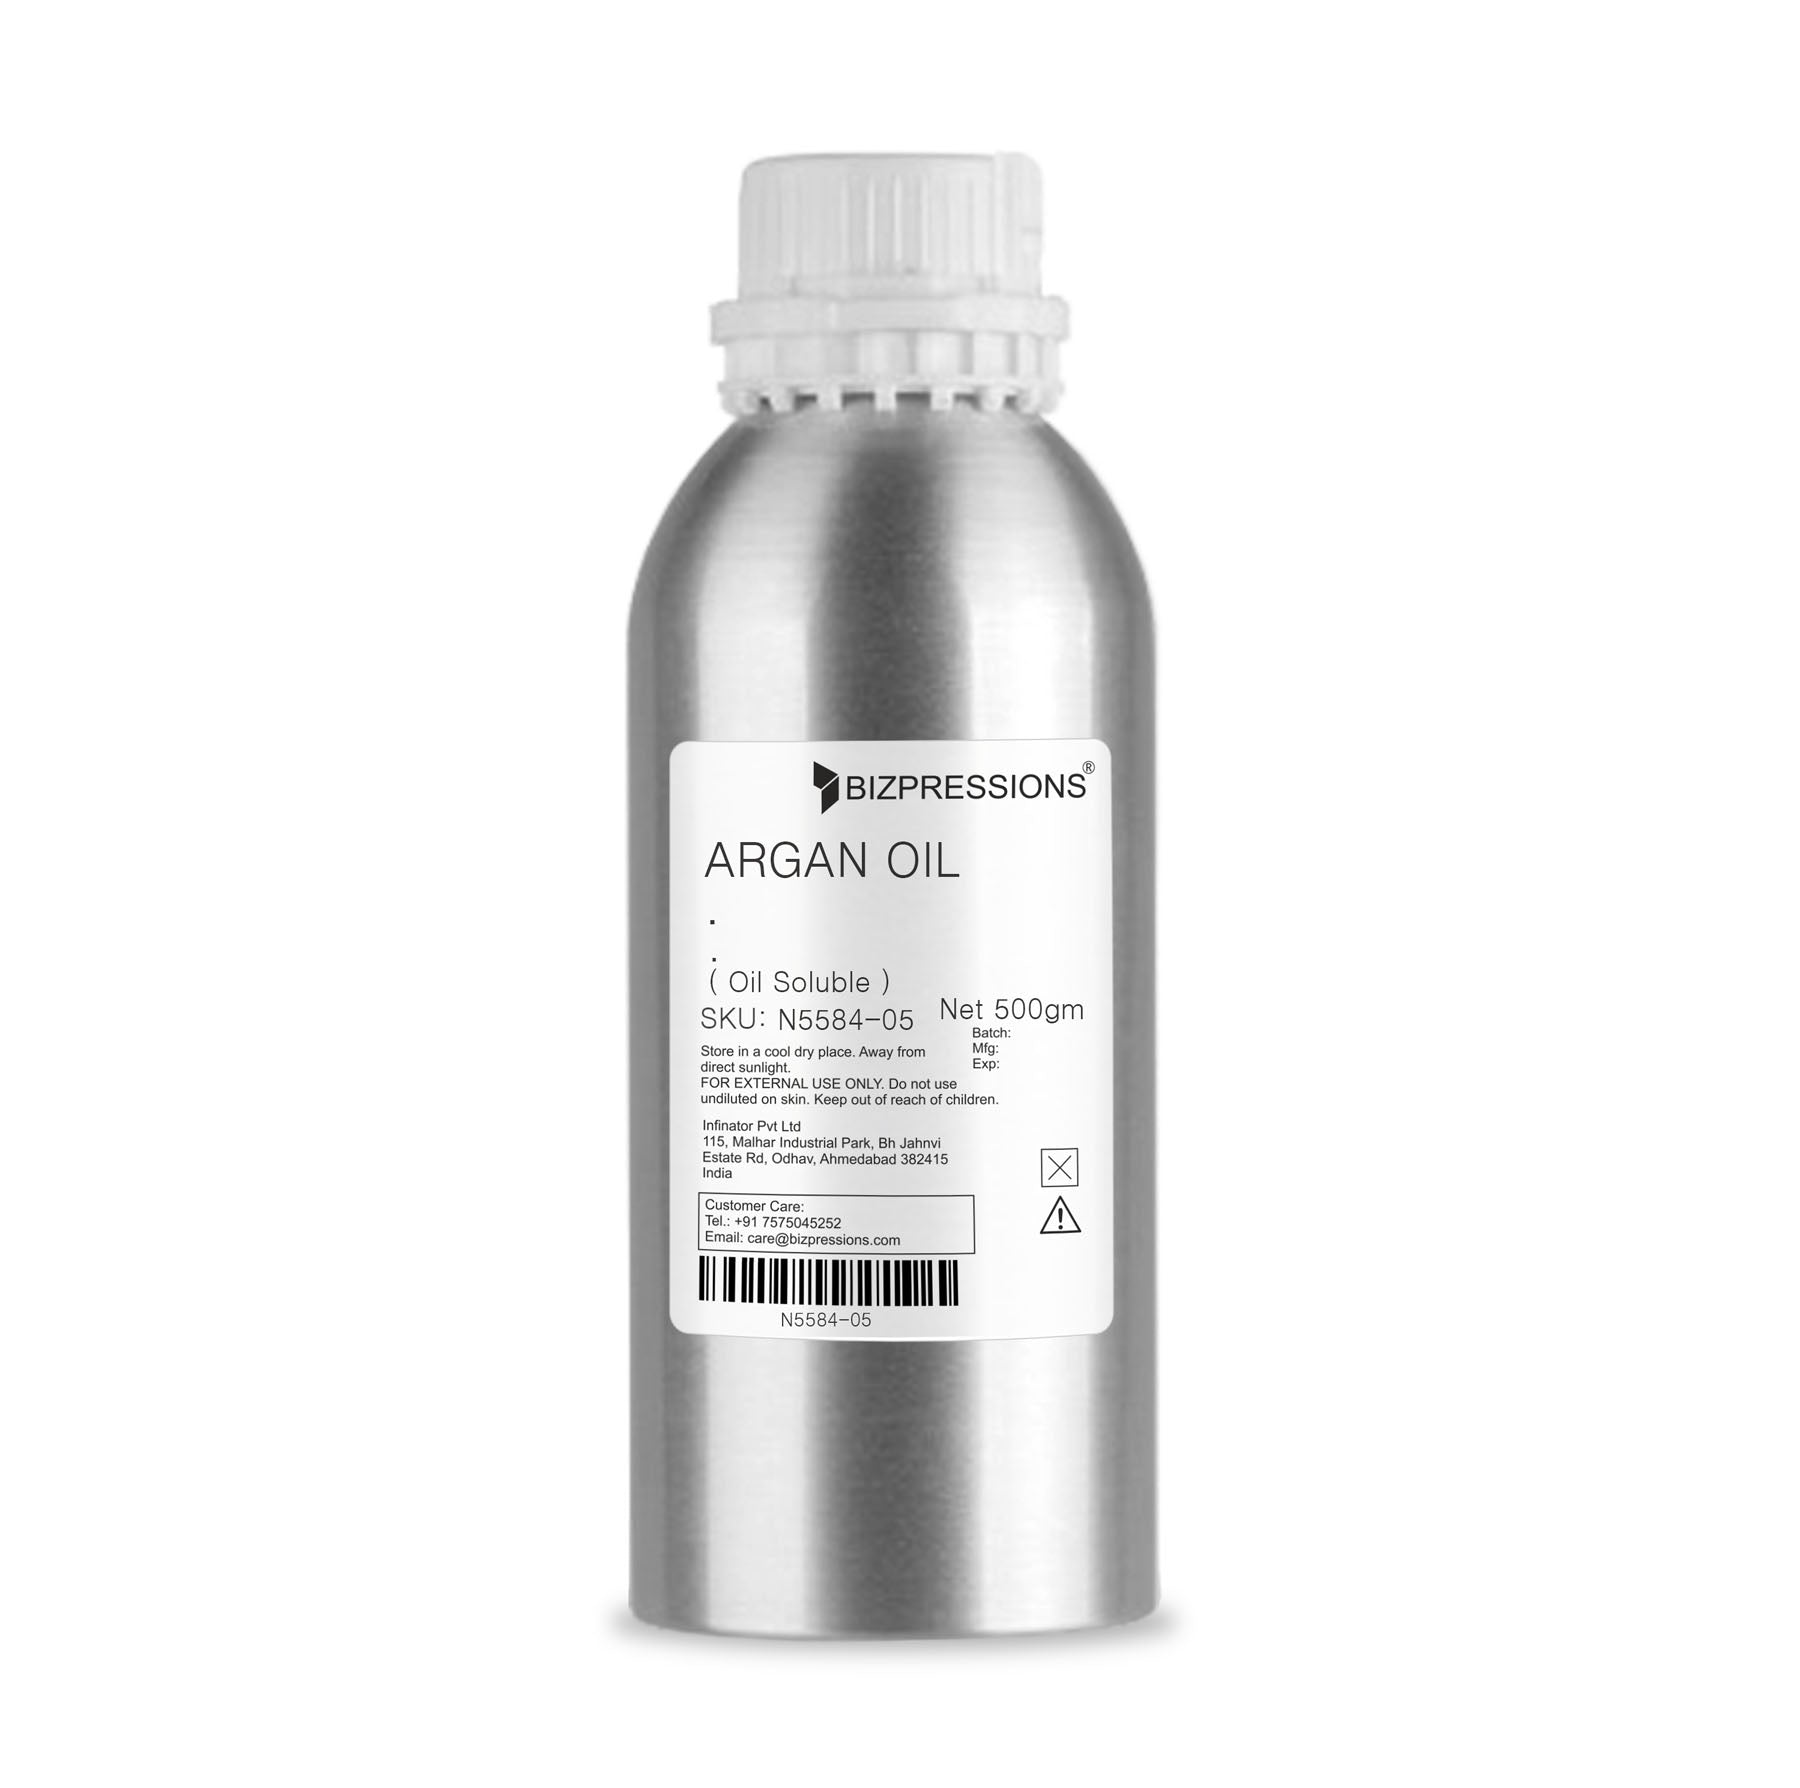 ARGAN OIL - Fragrance ( Oil Soluble ) - 500 gm